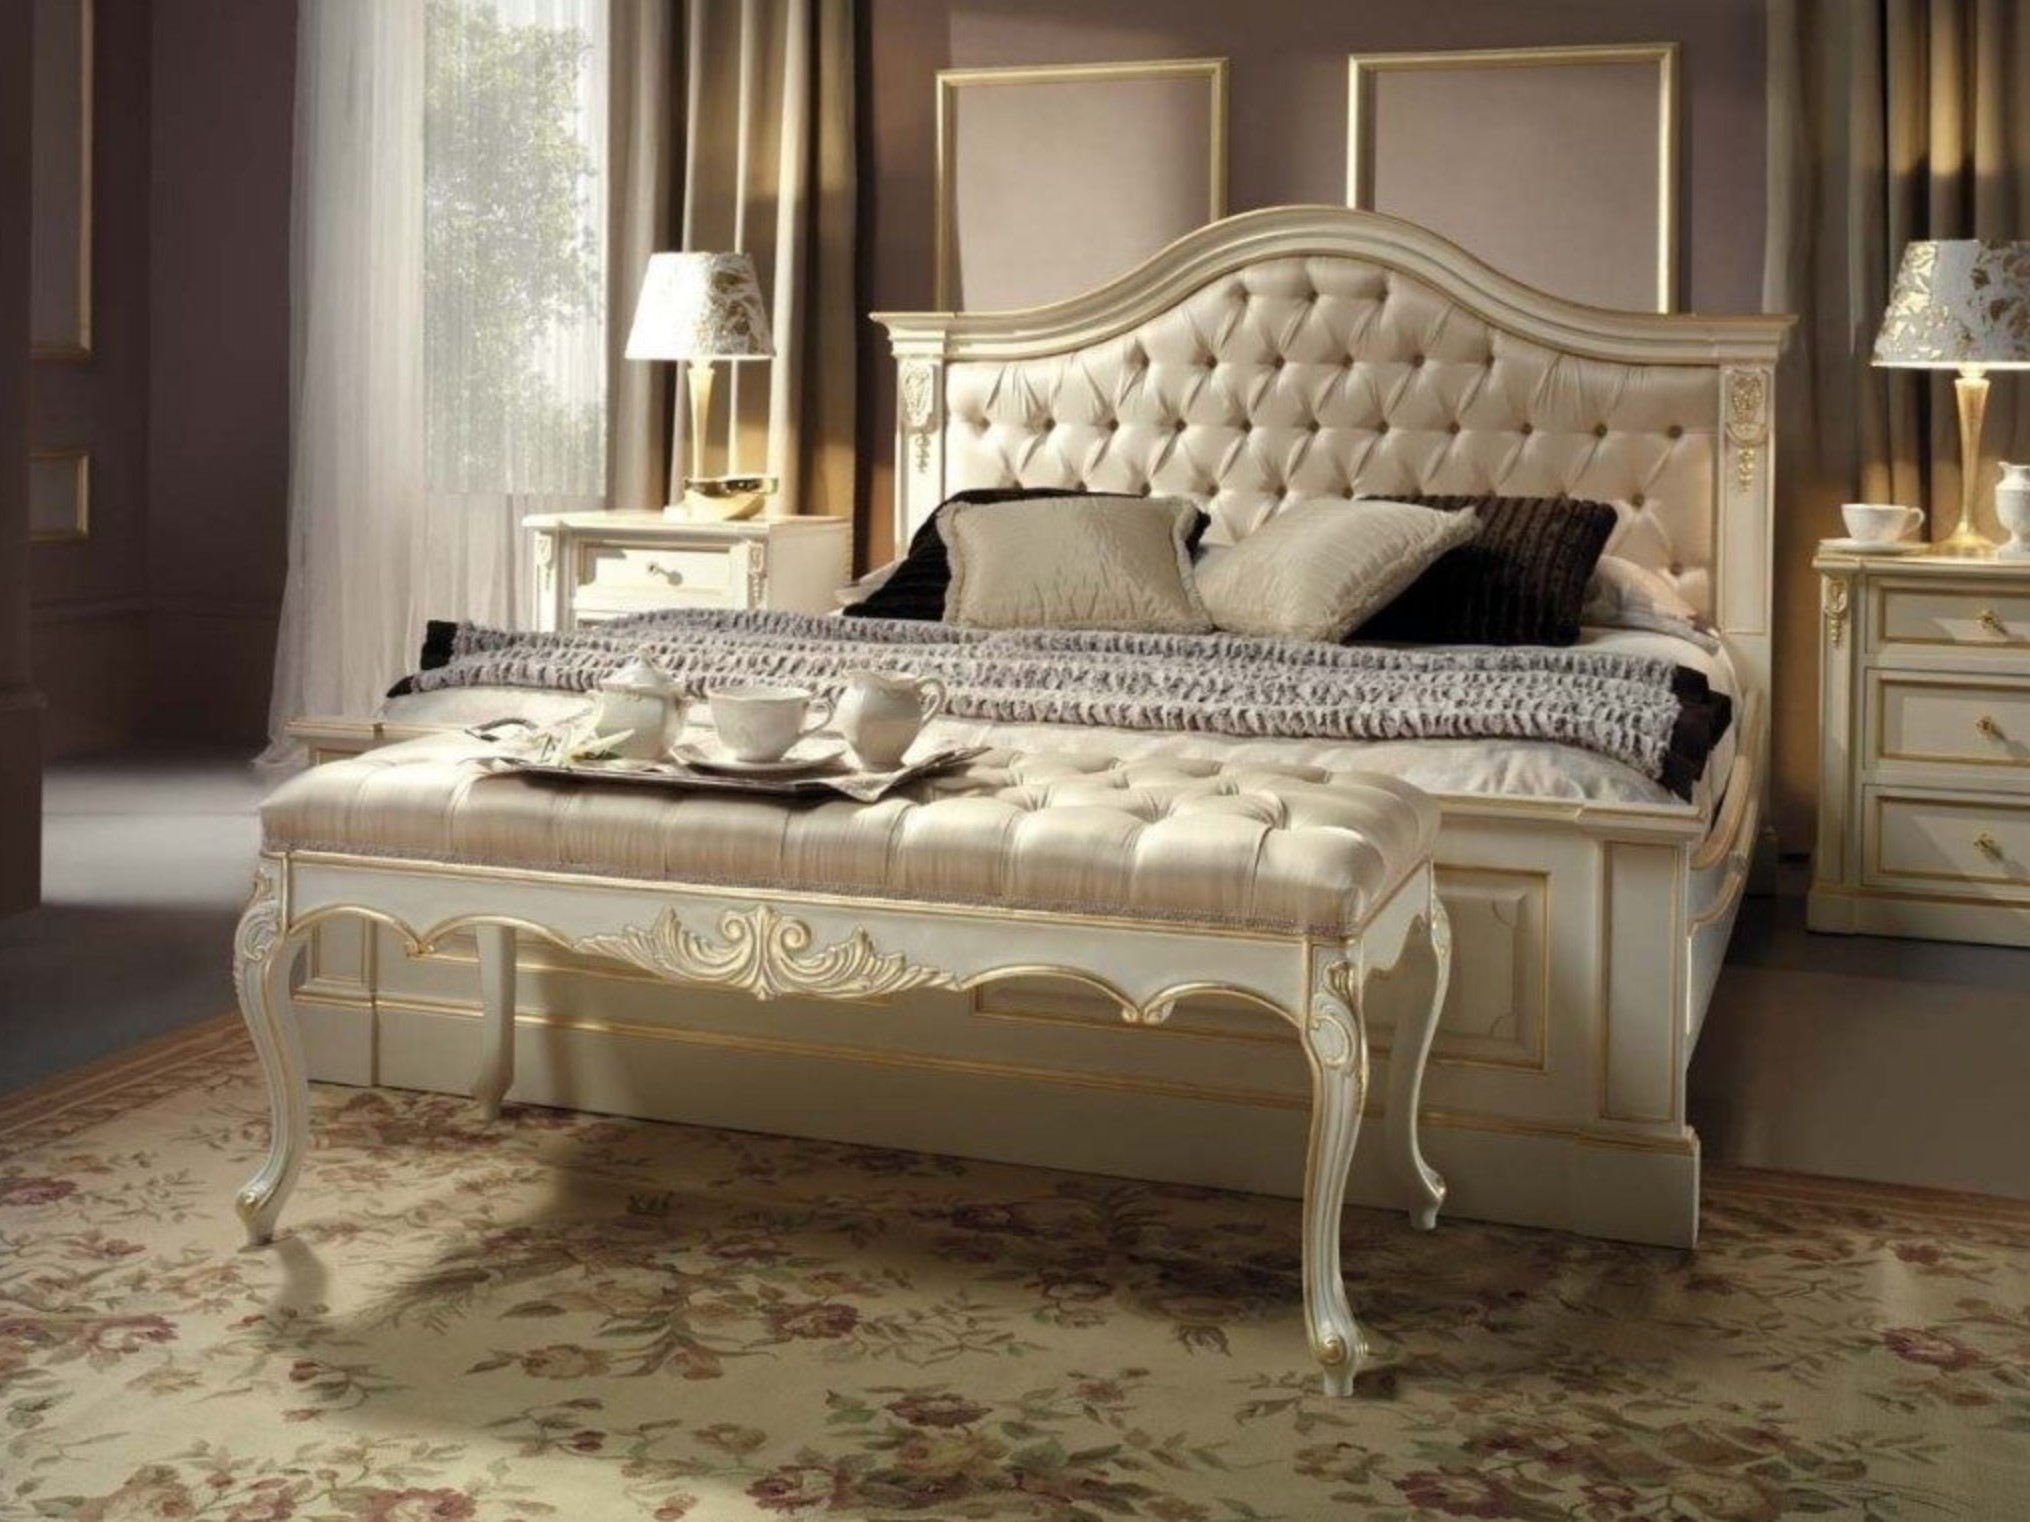 Внешний вид кровати в классическом стиле фото